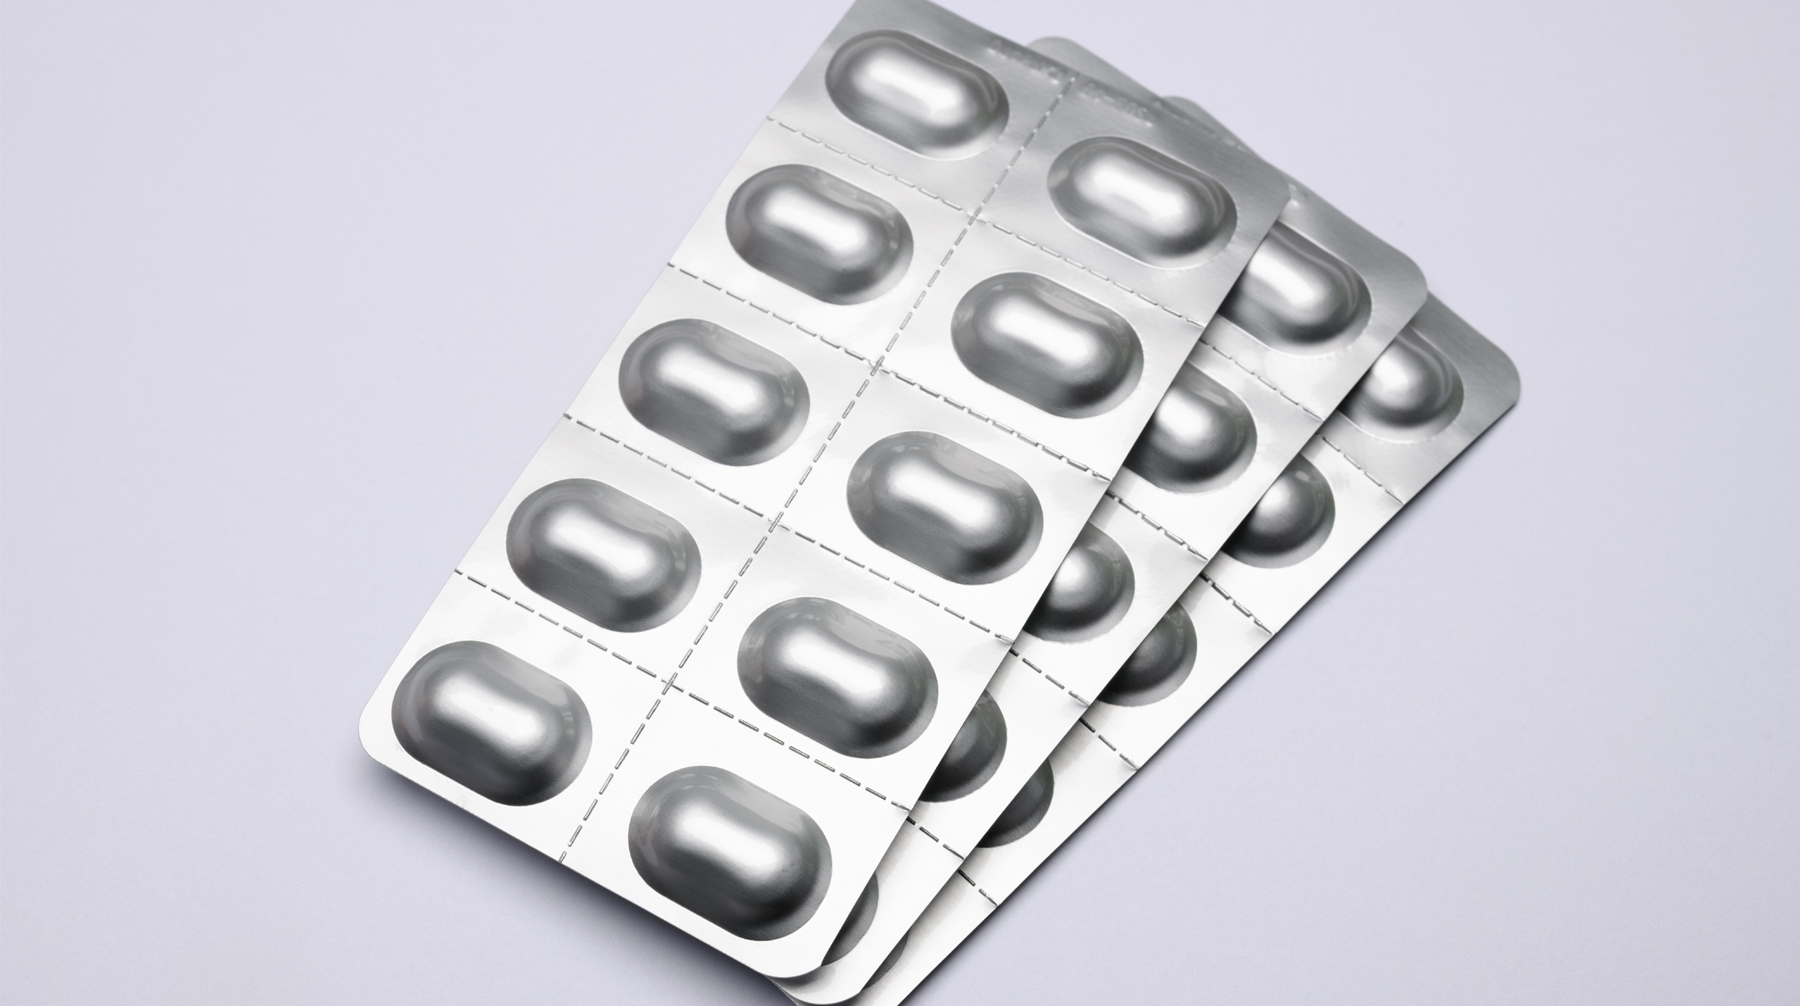 Бесплатный препарат под названием «Клобазам» можно будет получить из расчета на три месяца приема Фото: © Global Look Press